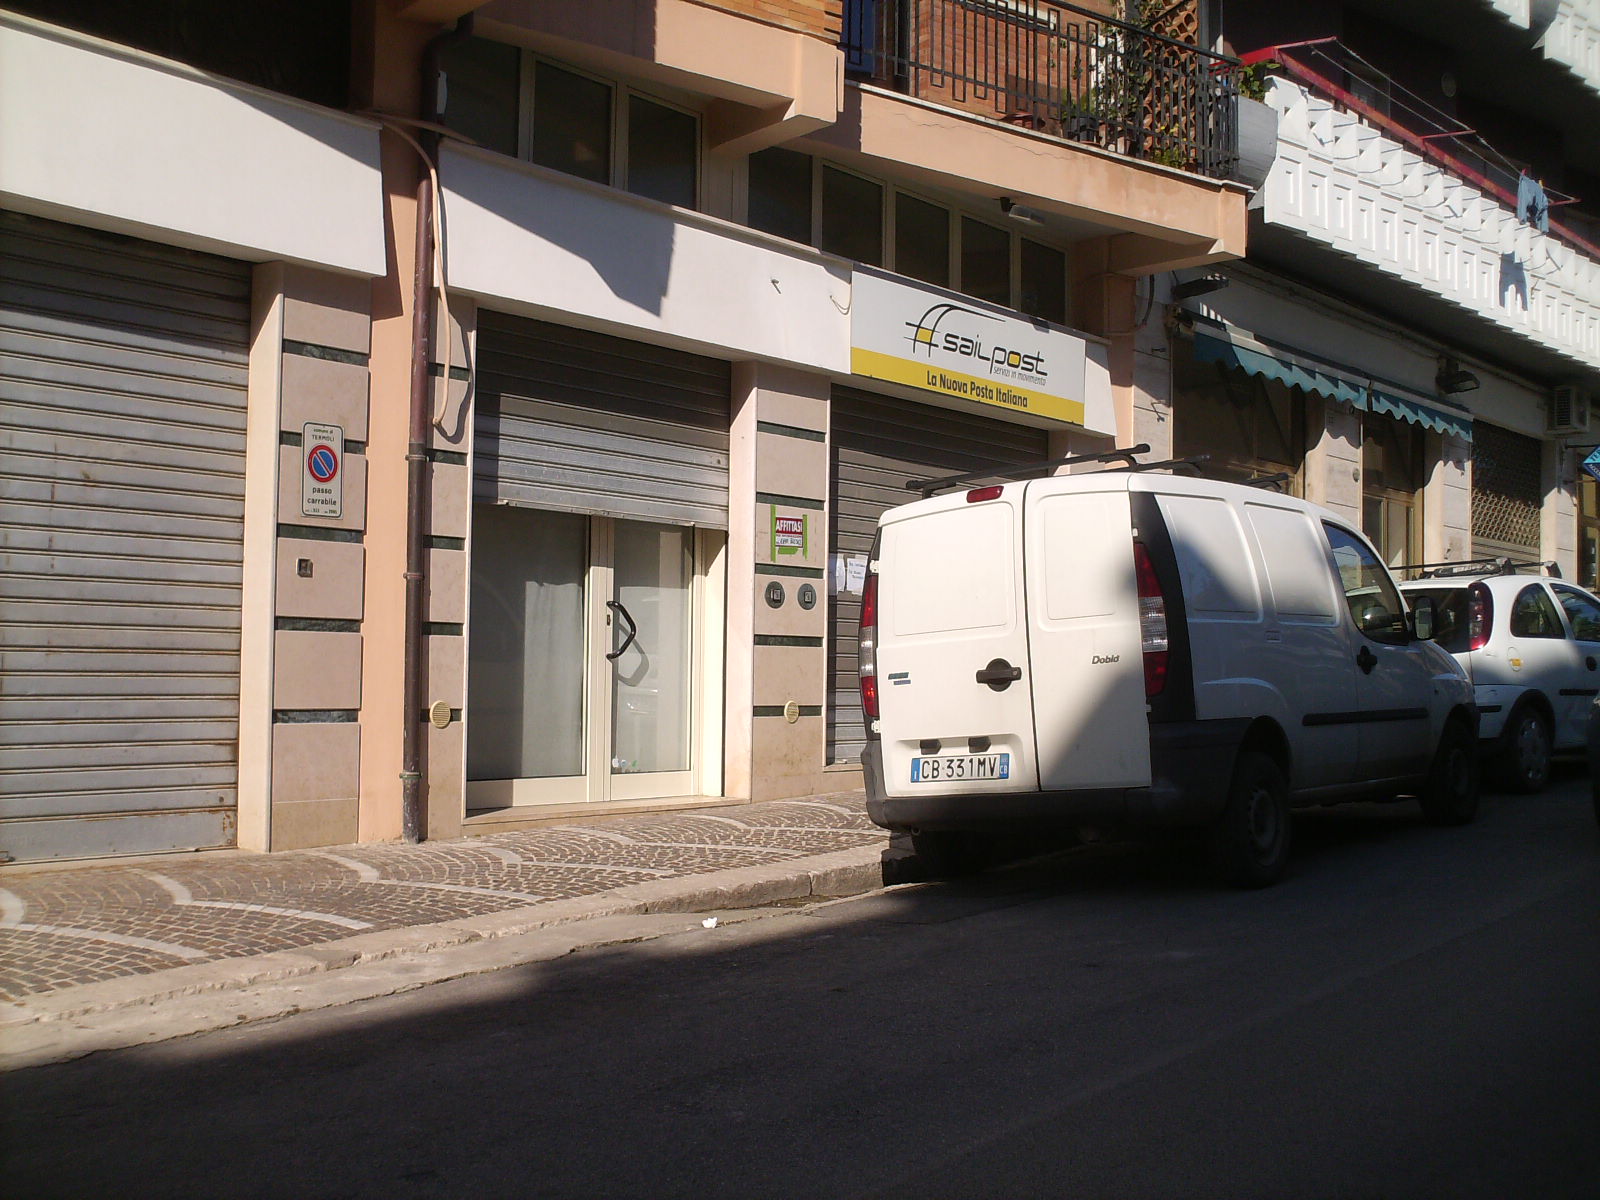 Ufficio Sail Post trasloca in Corso Nazionale | Termoli myblog